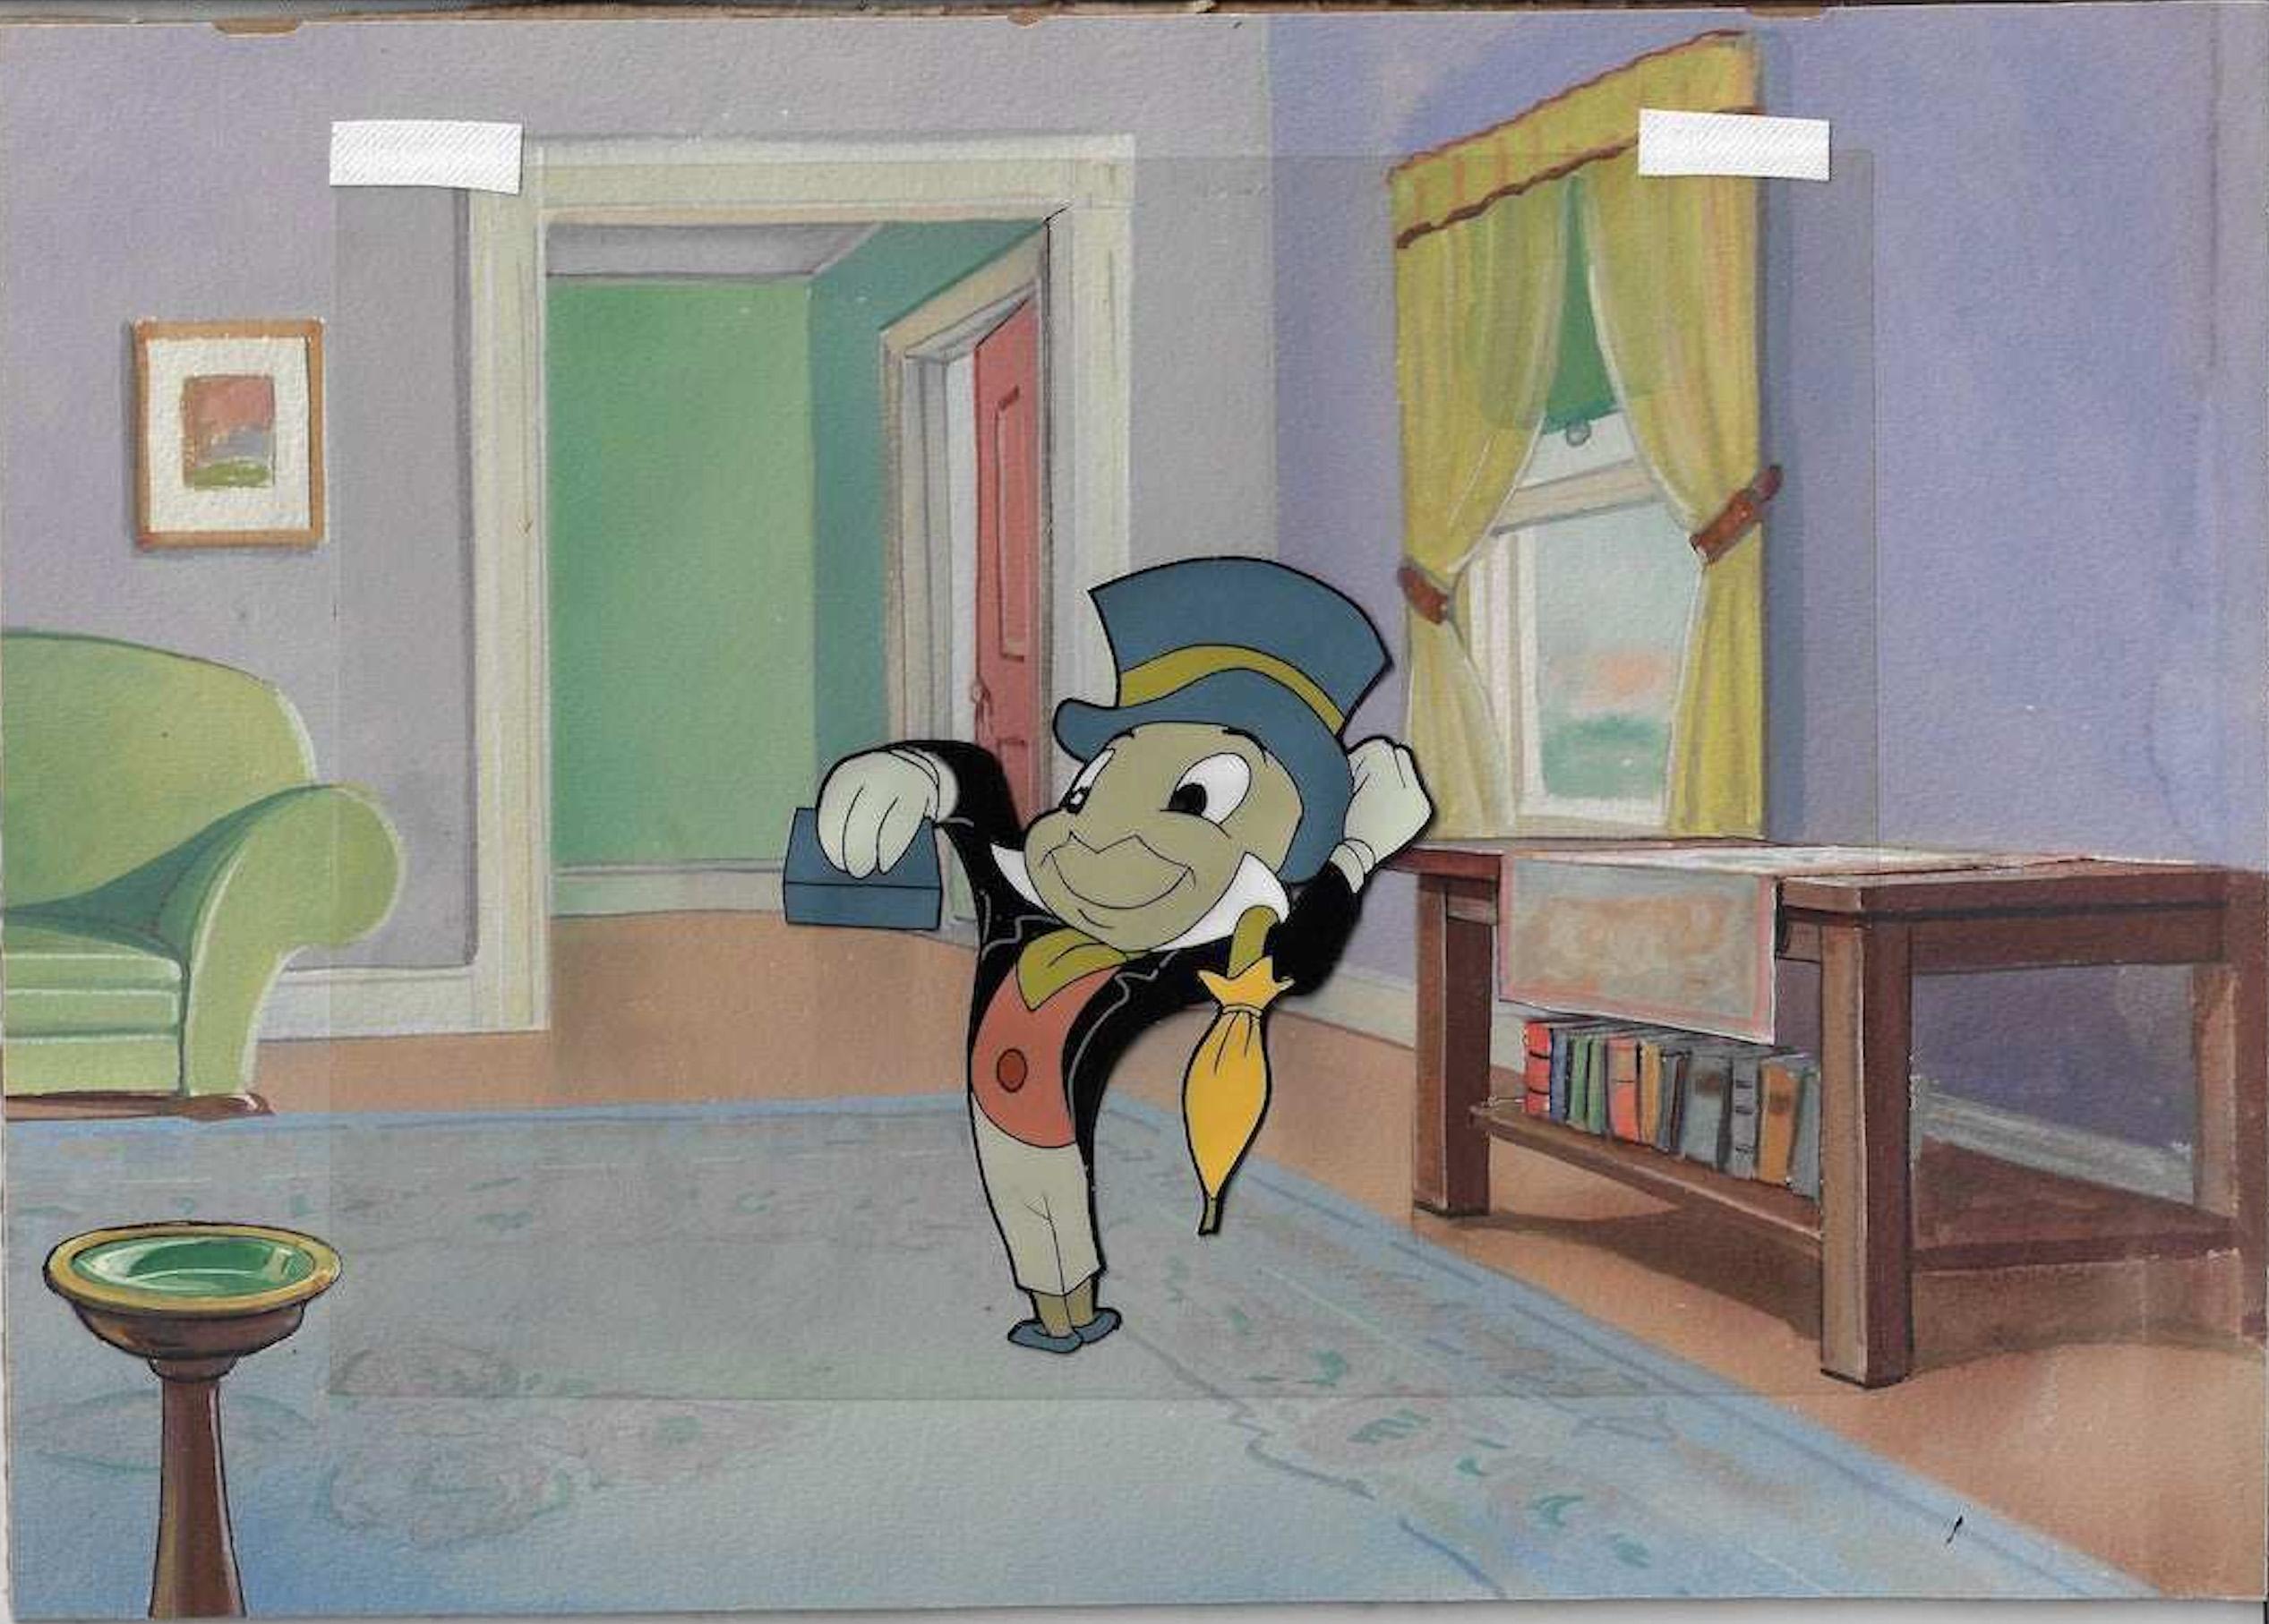 Jiminy Cricket Original Produktionscel auf bedrucktem Hintergrund – Art von Walt Disney Studio Artists